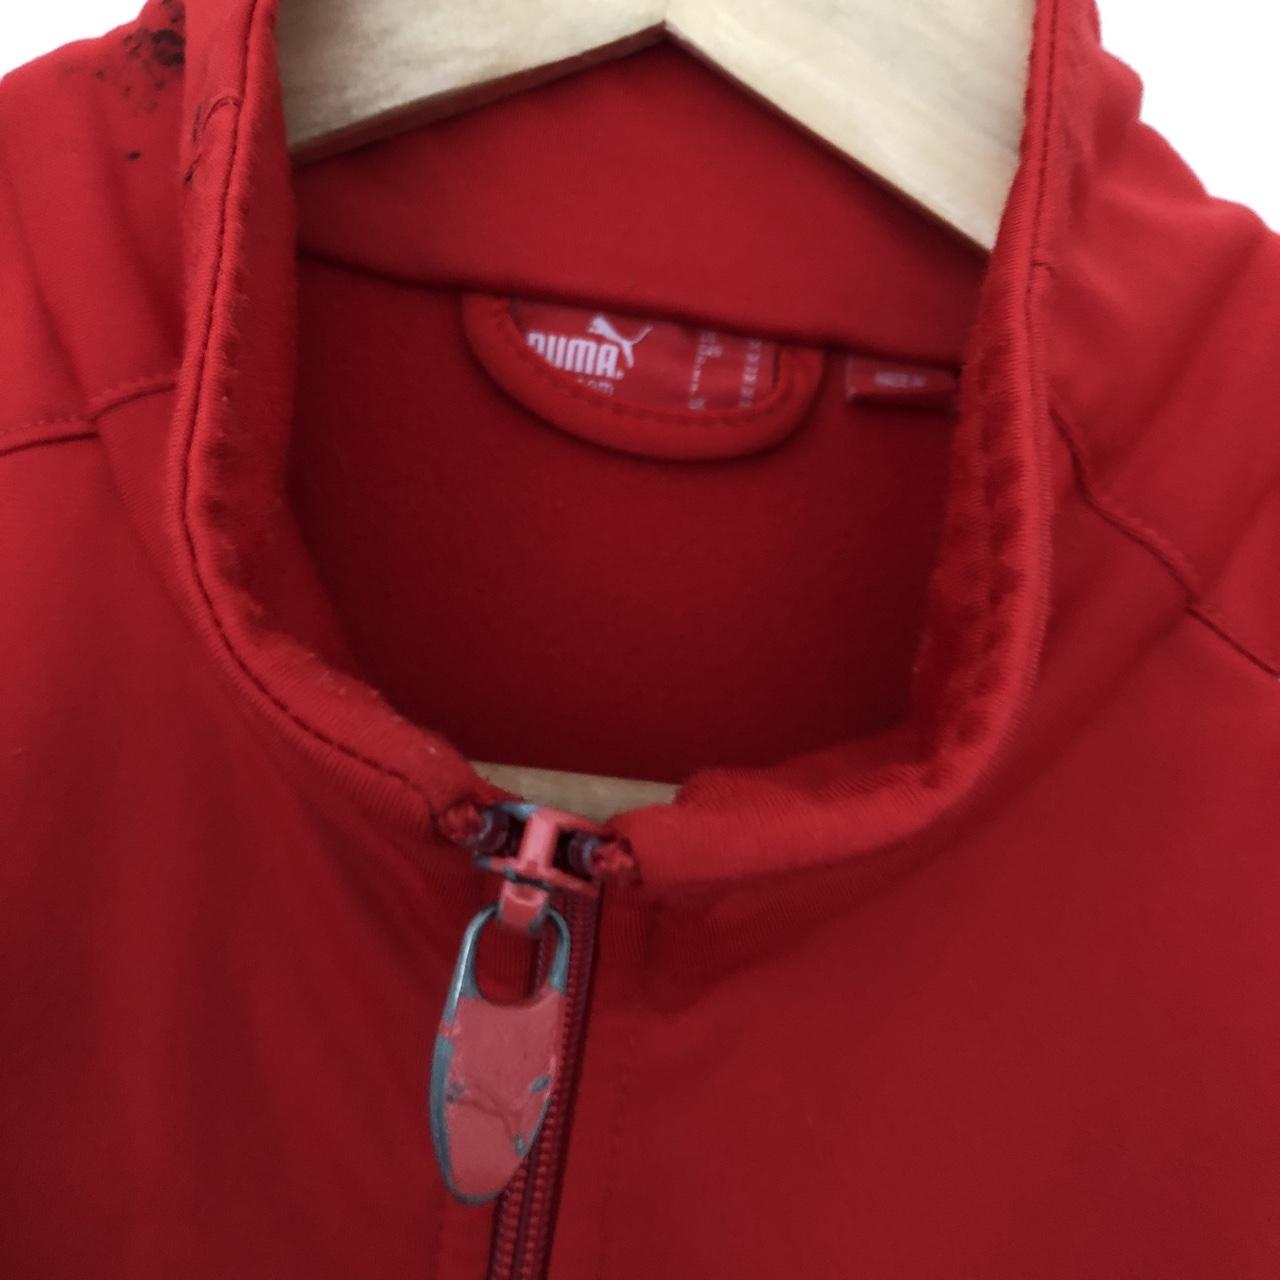 Vintage Puma track jacket. Red. Size... - Depop